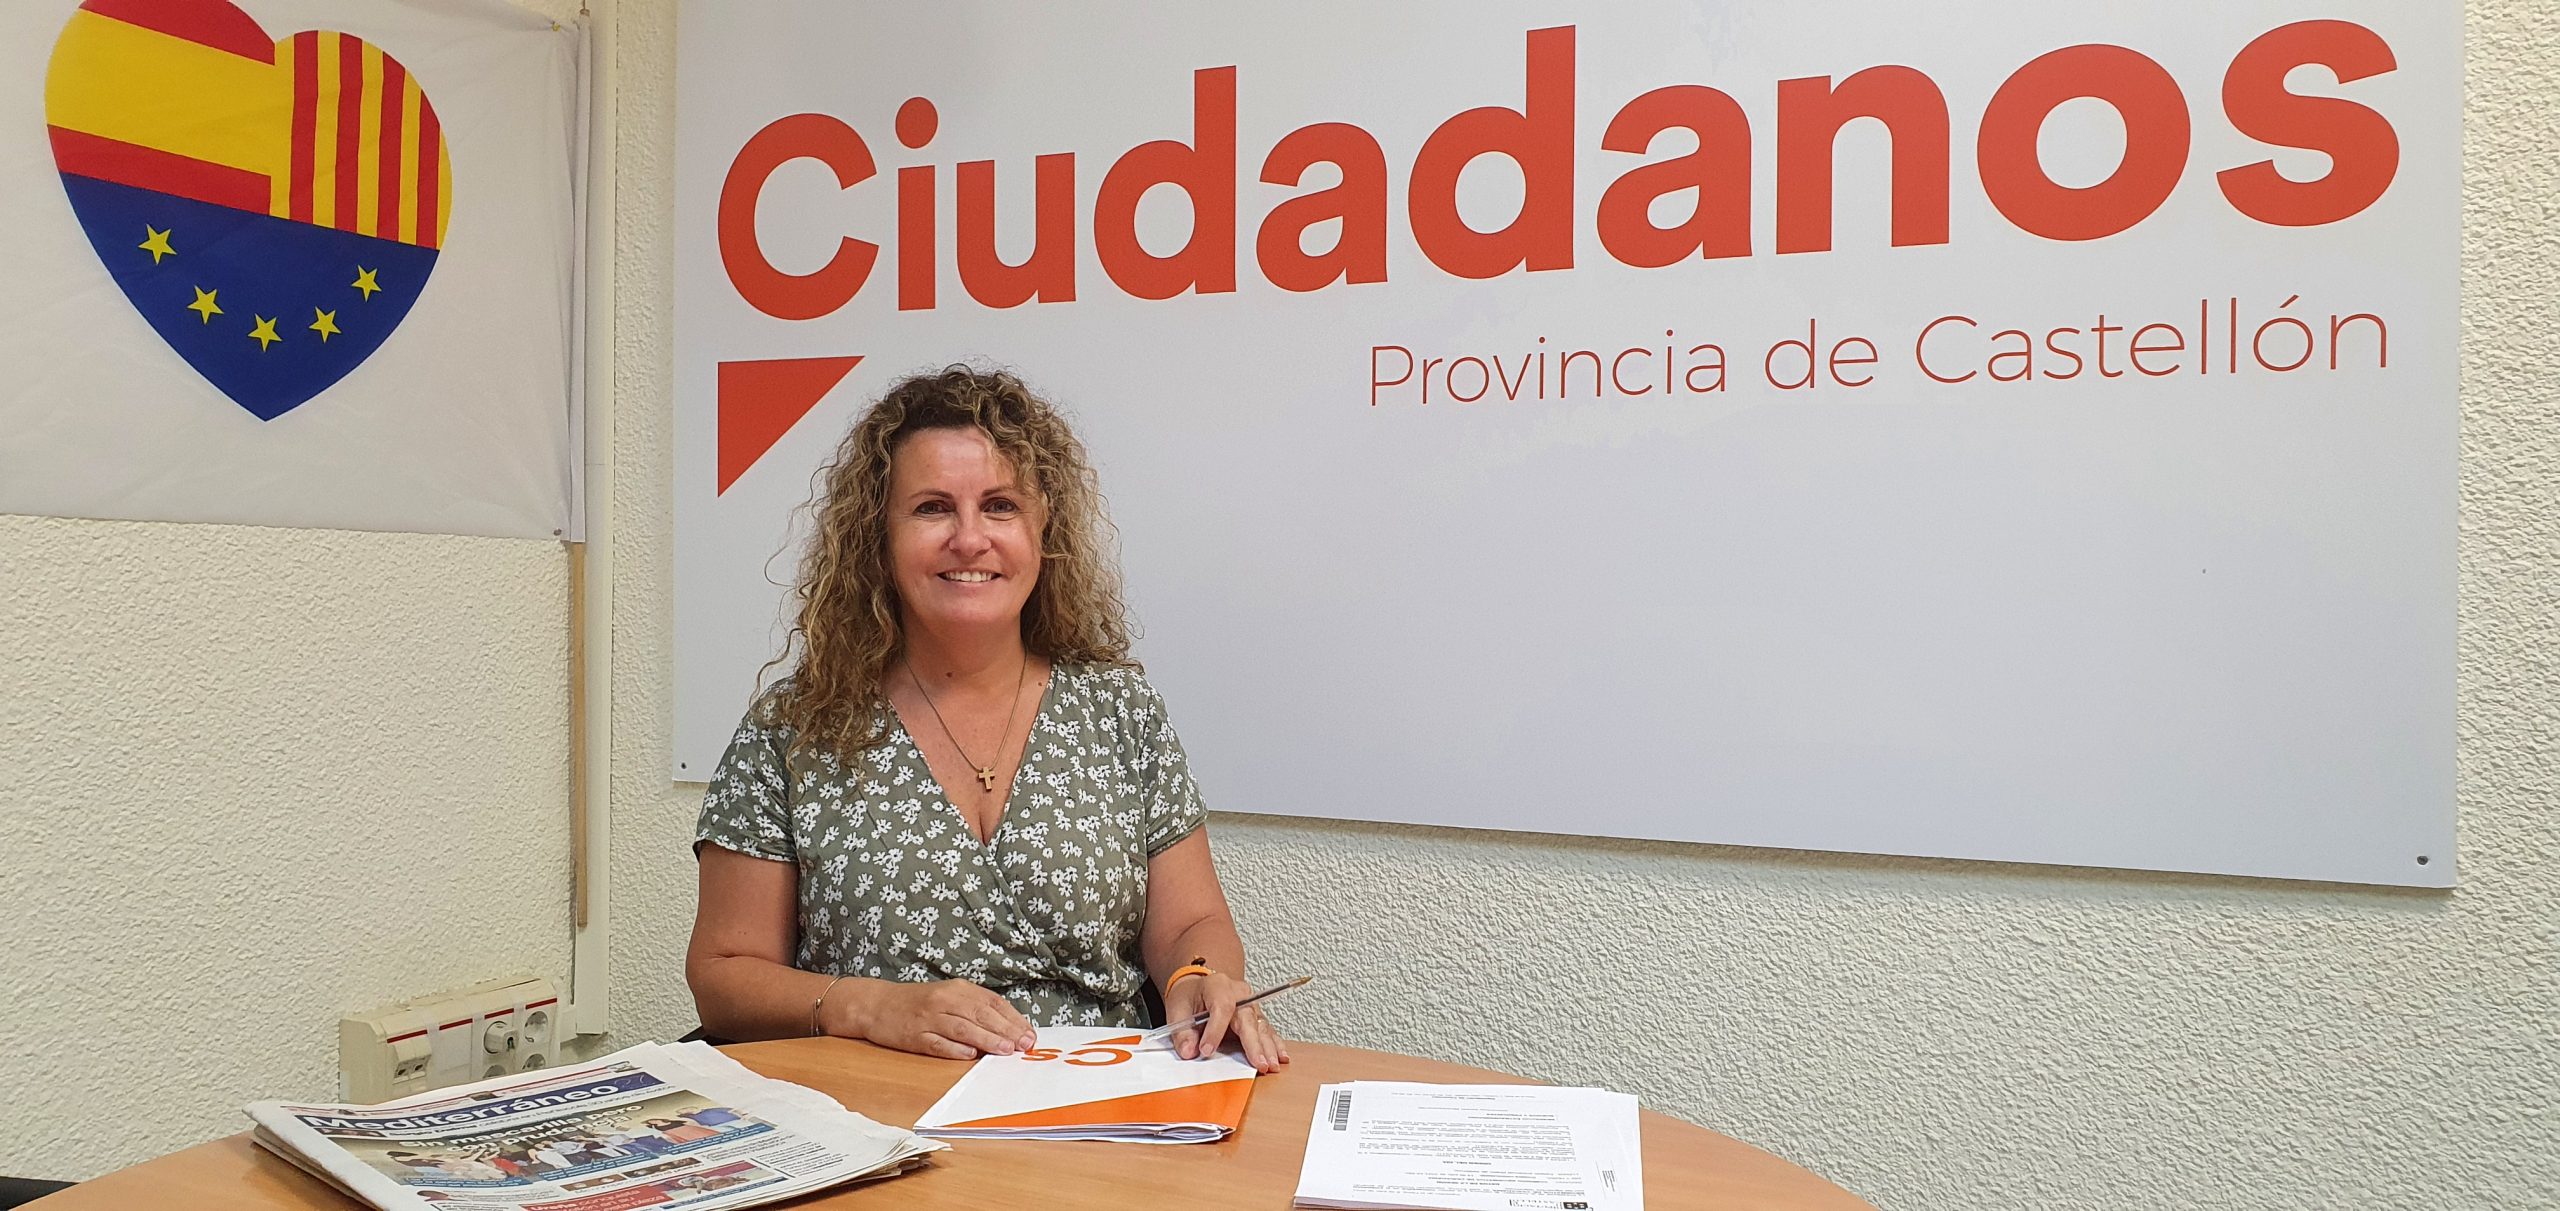 Ciudadanos pedirá que se restituya la frecuencia de los Cercanías Castellón-Valencia